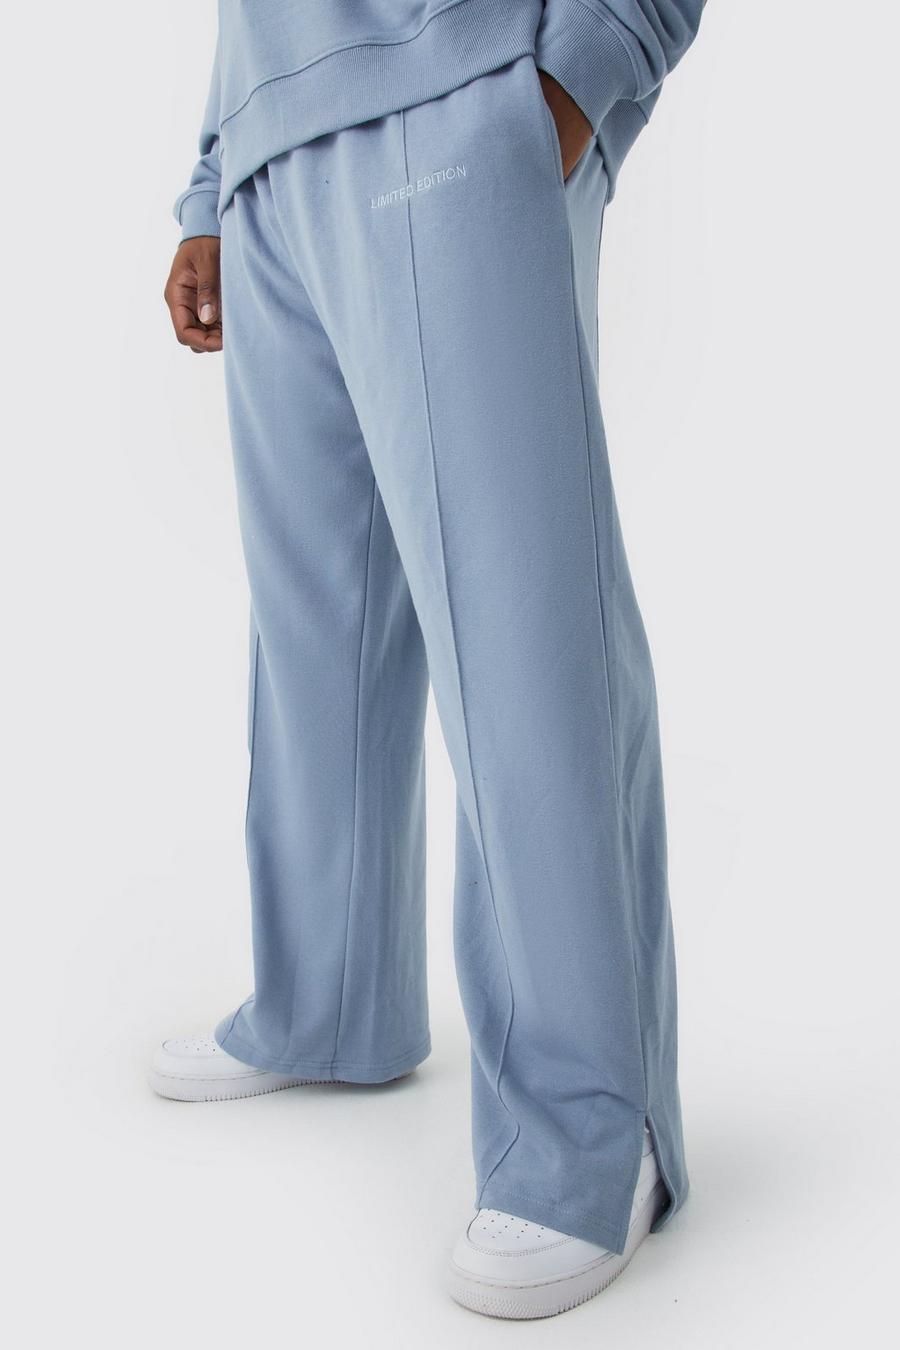 Pantaloni tuta pesanti Plus Size rilassati con spacco sul fondo, Dusty blue